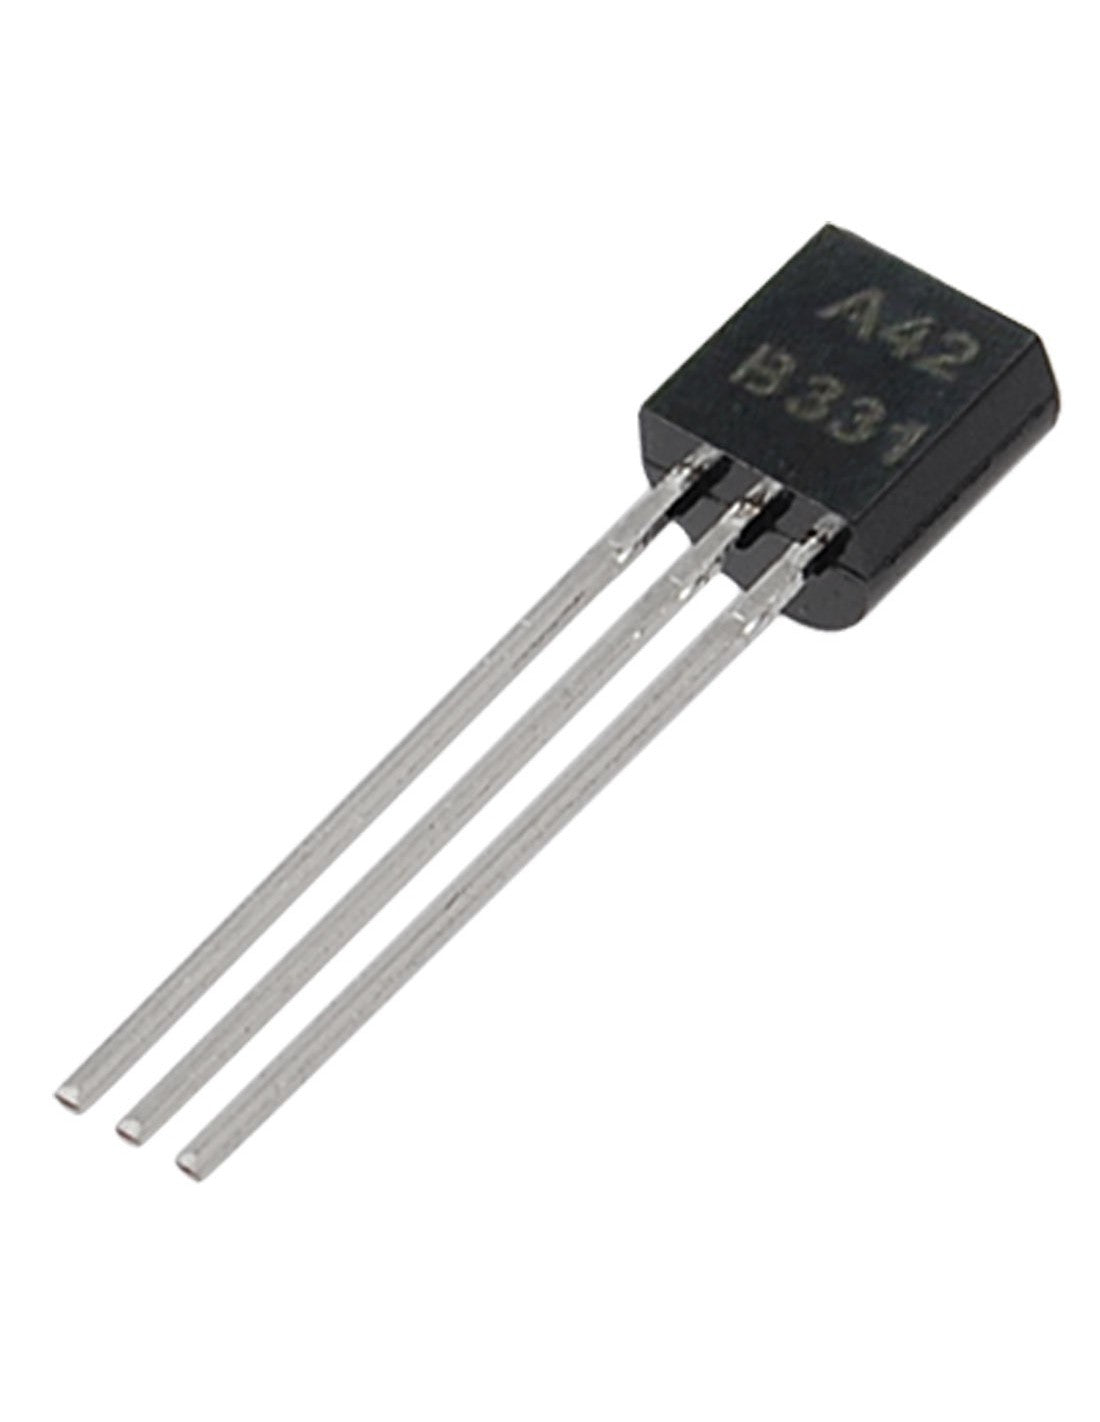 A42 NPN Transistor